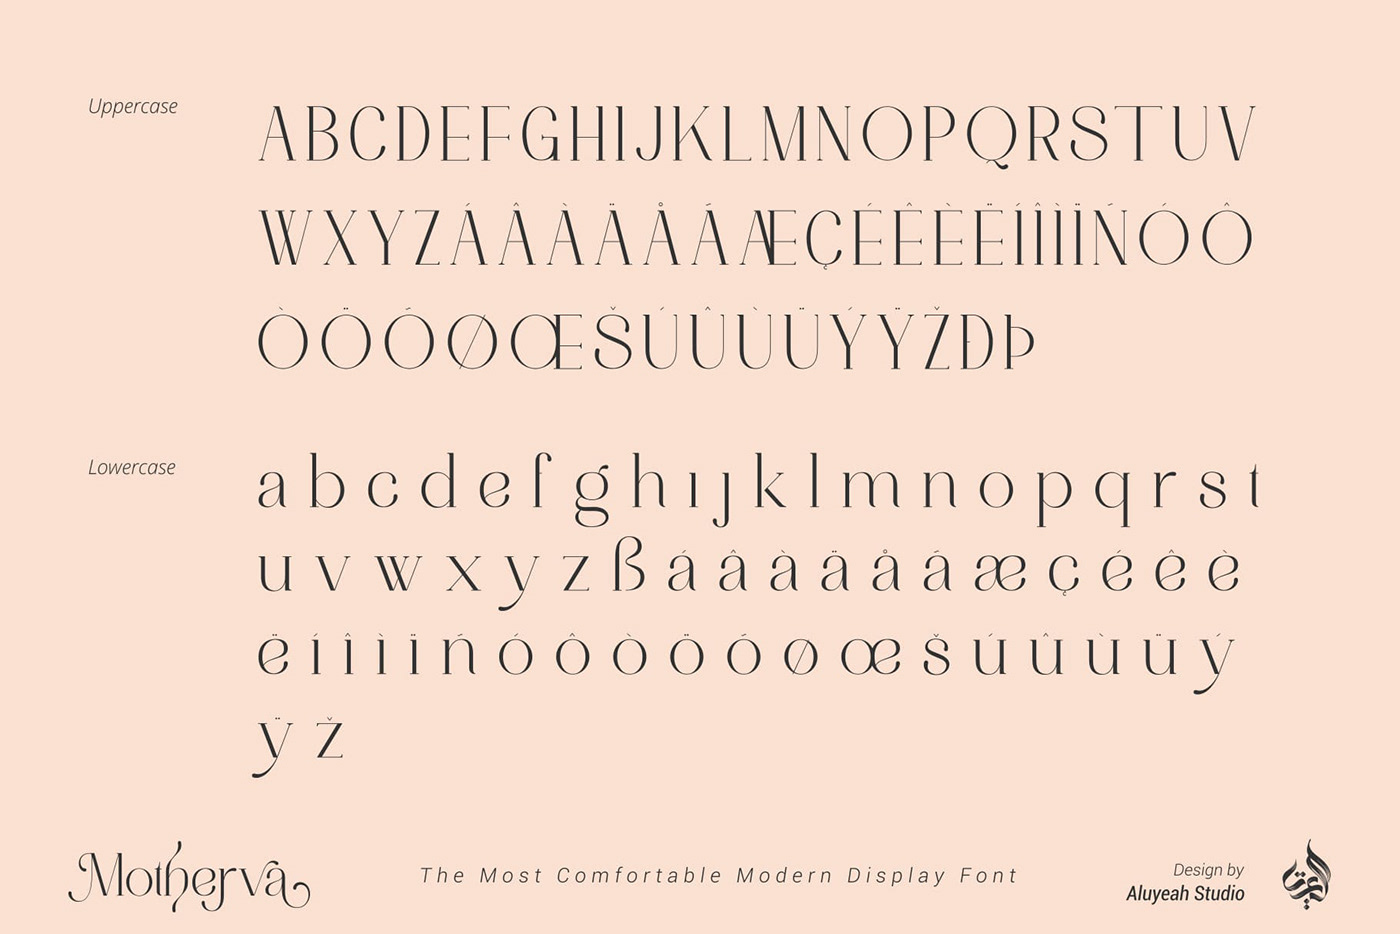 branding  display font Font Freebie free Free font freebie Logo Design modern display Typeface typography  